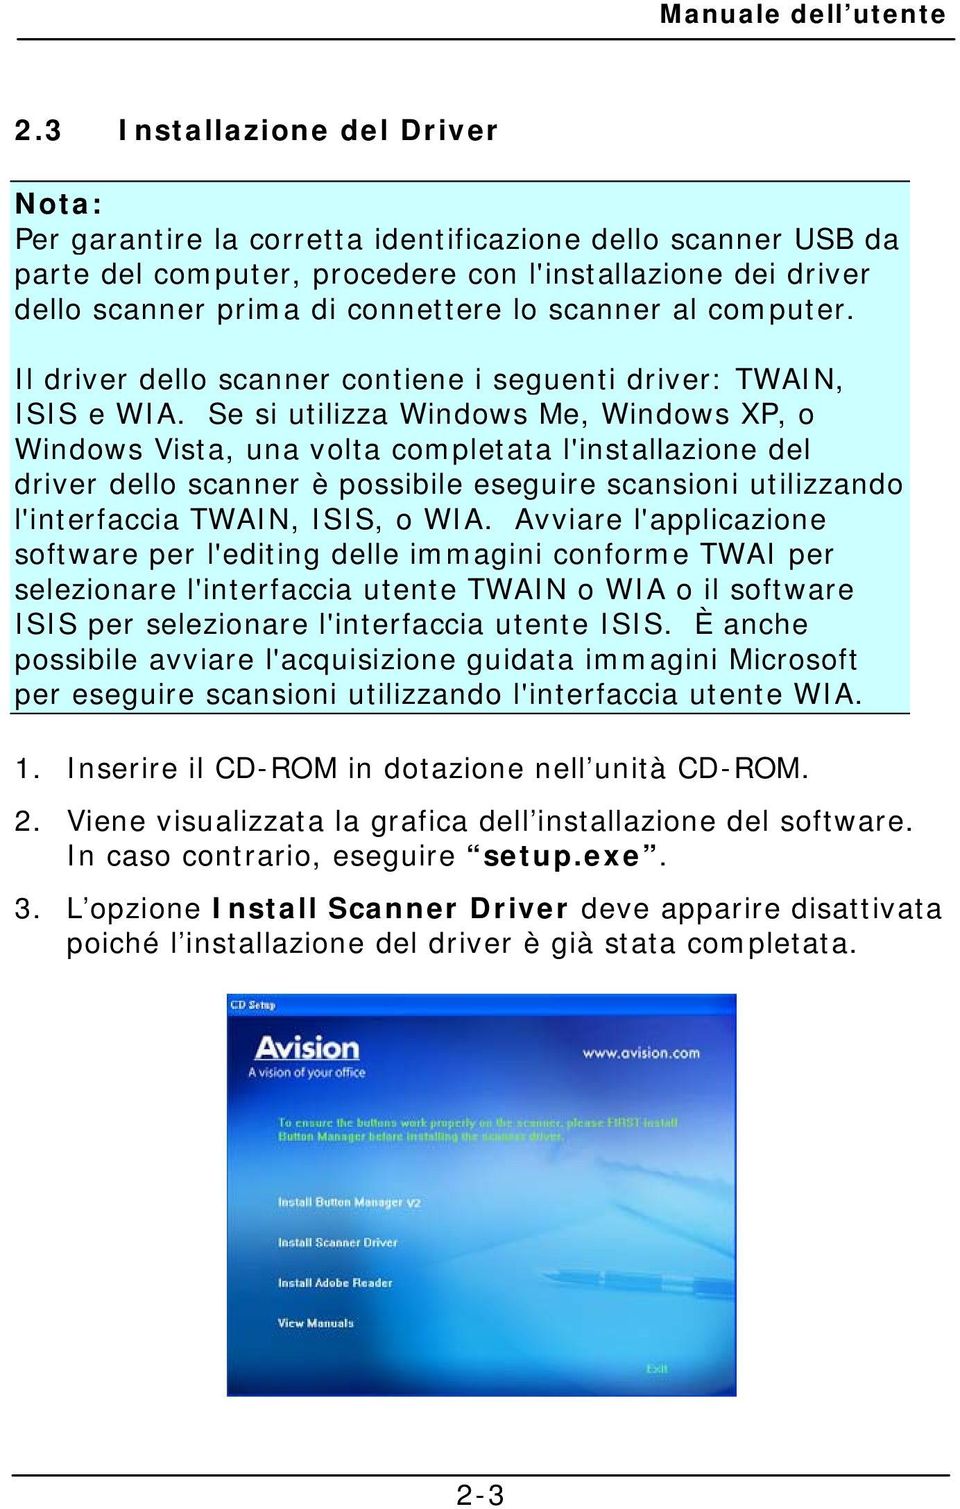 Se si utilizza Windows Me, Windows XP, o Windows Vista, una volta completata l'installazione del driver dello scanner è possibile eseguire scansioni utilizzando l'interfaccia TWAIN, ISIS, o WIA.